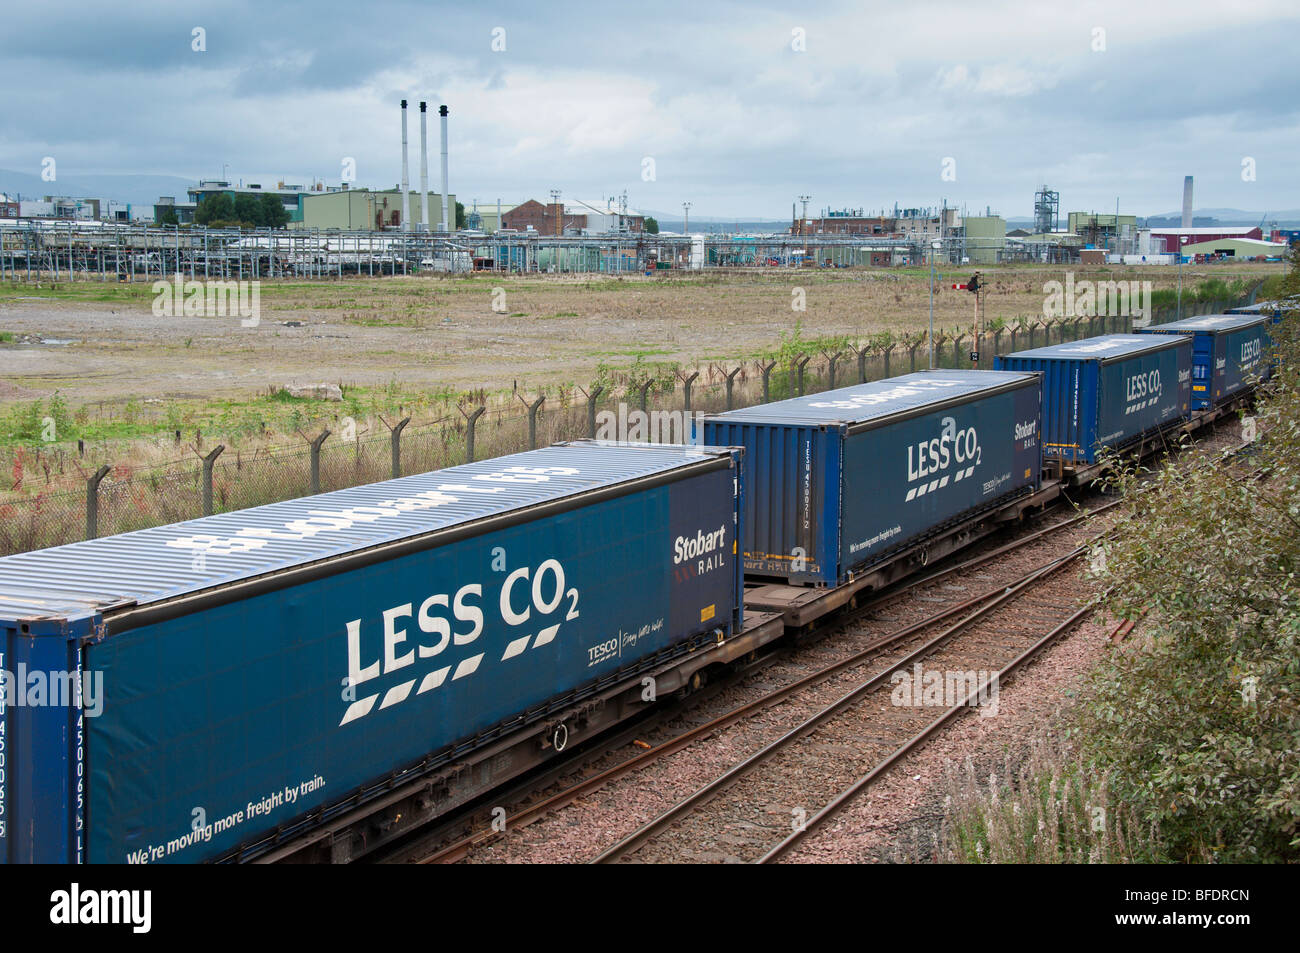 Les conteneurs de transport ferroviaire Tesco supermarché de marchandises avec moins de CO2 à Grangemouth en Ecosse avec l'industrie en arrière-plan Banque D'Images